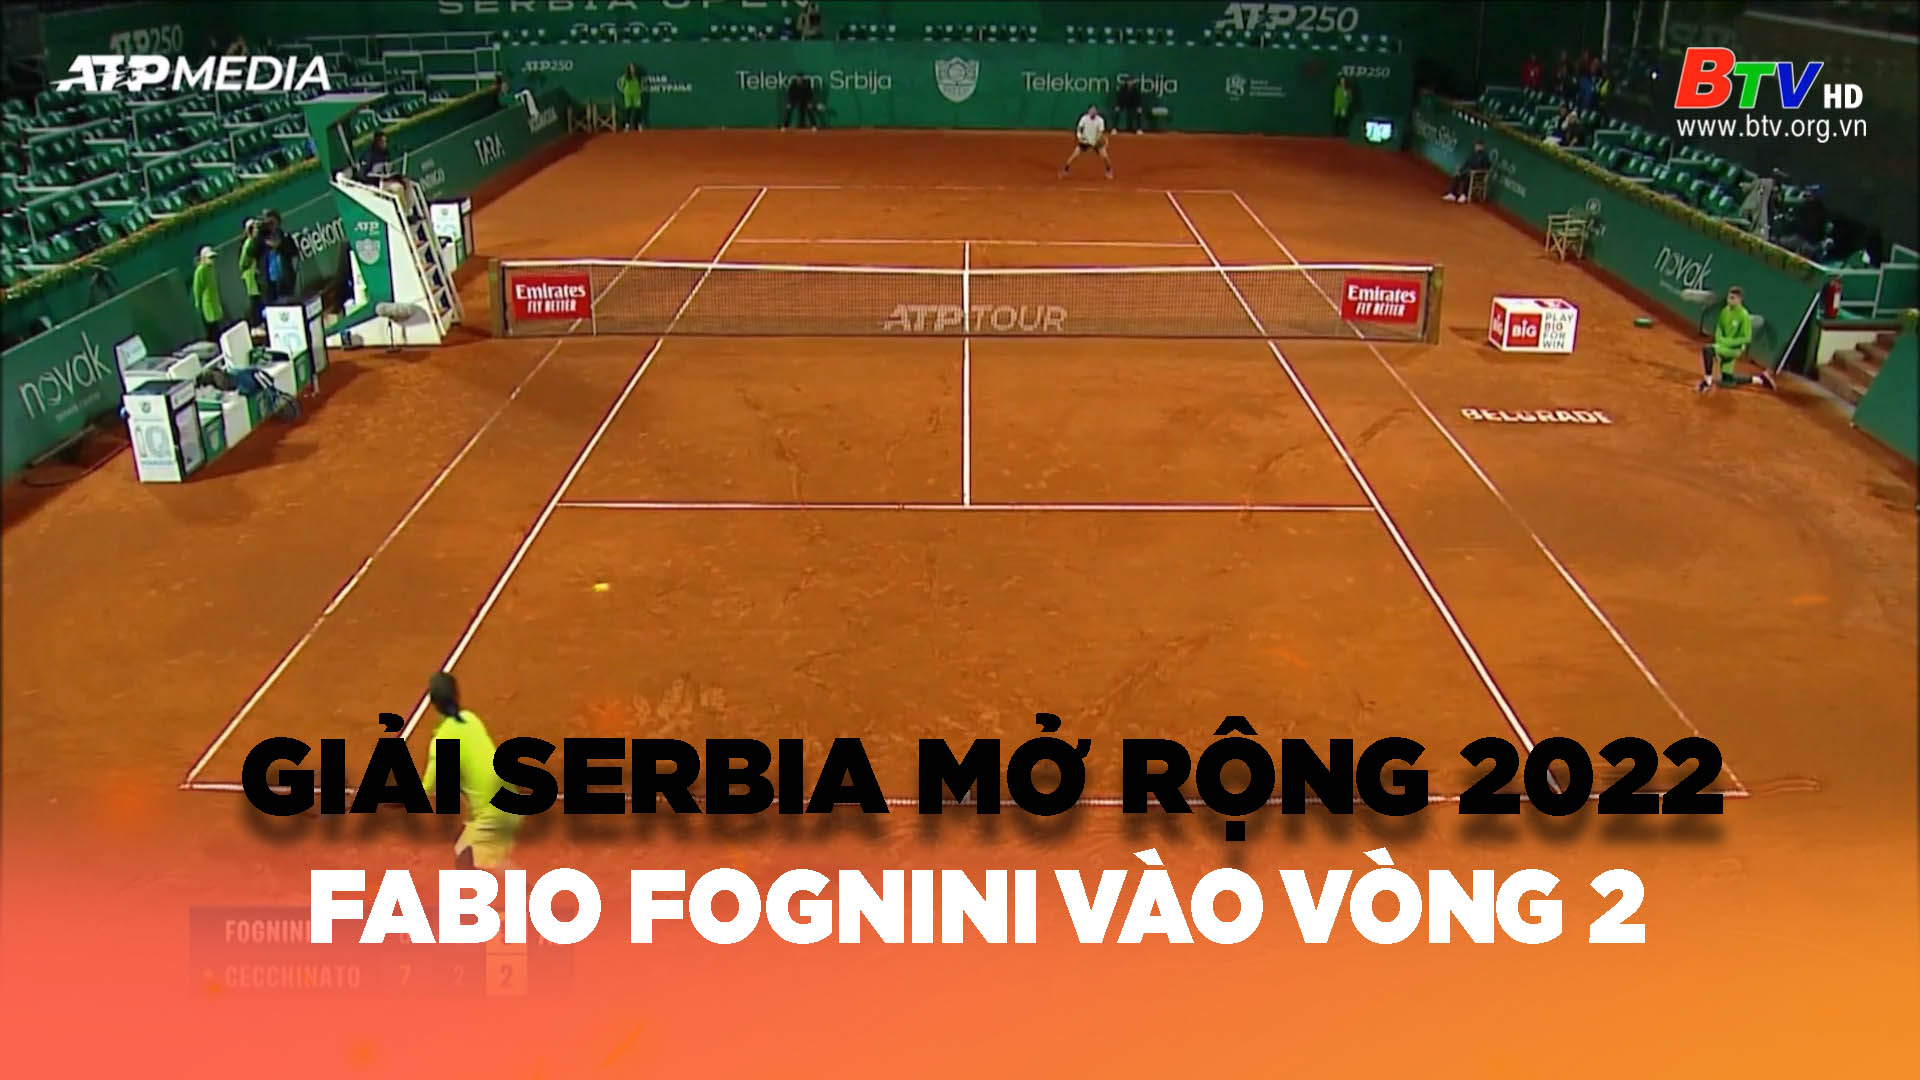 	Fabio Fognini vào vòng 2 Giải Serbia mở rộng 2022